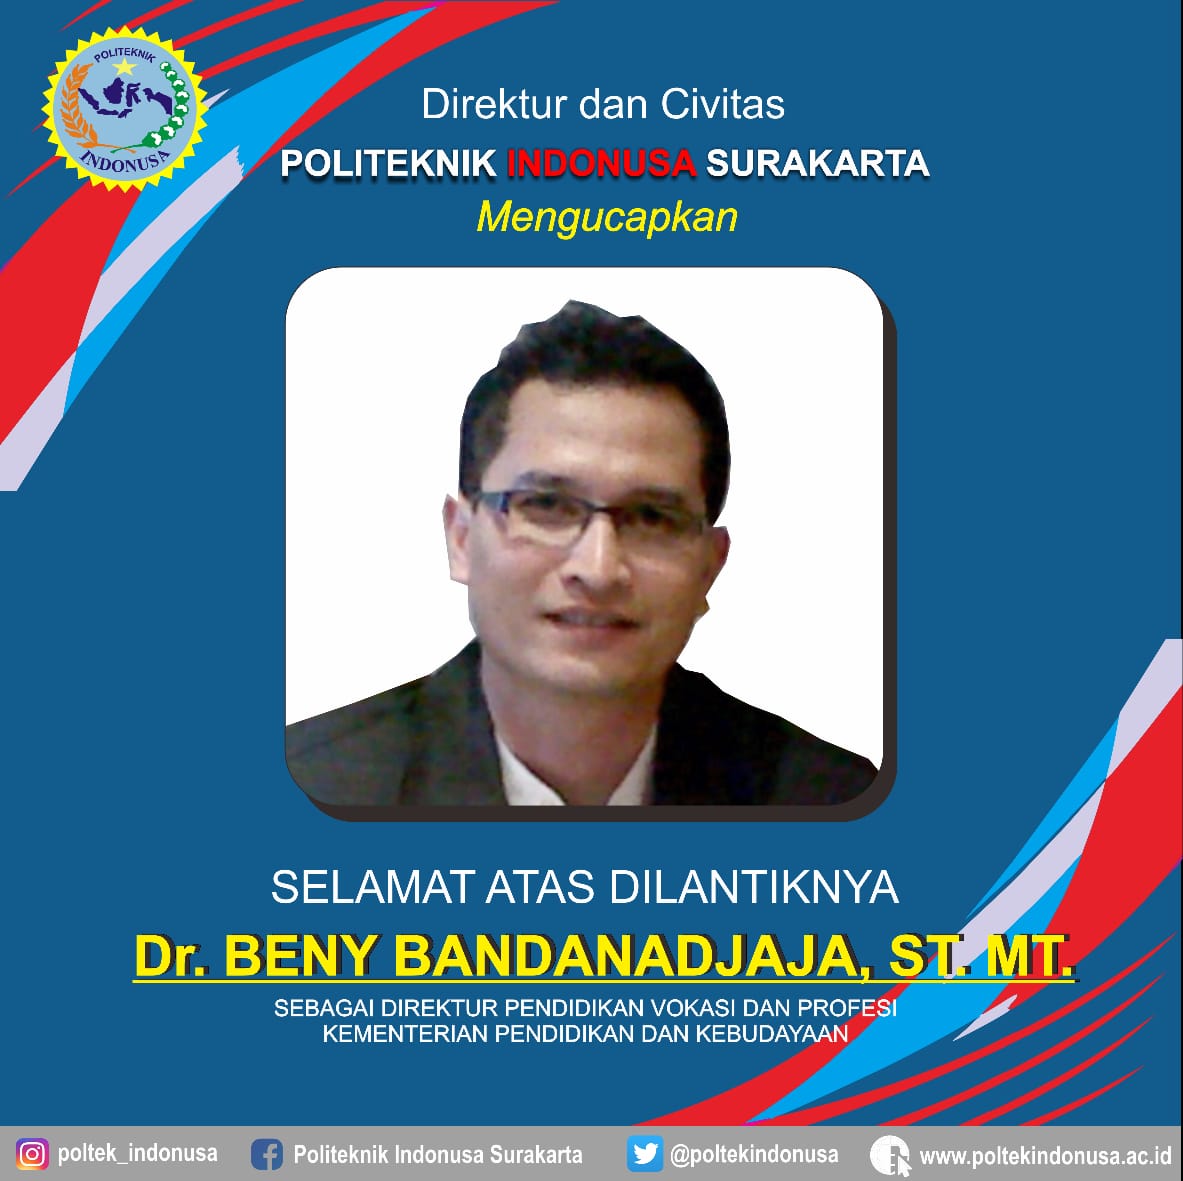 Selamat Atas Dilantiknya Dr. Beny Bandanadjaja, ST. MT.